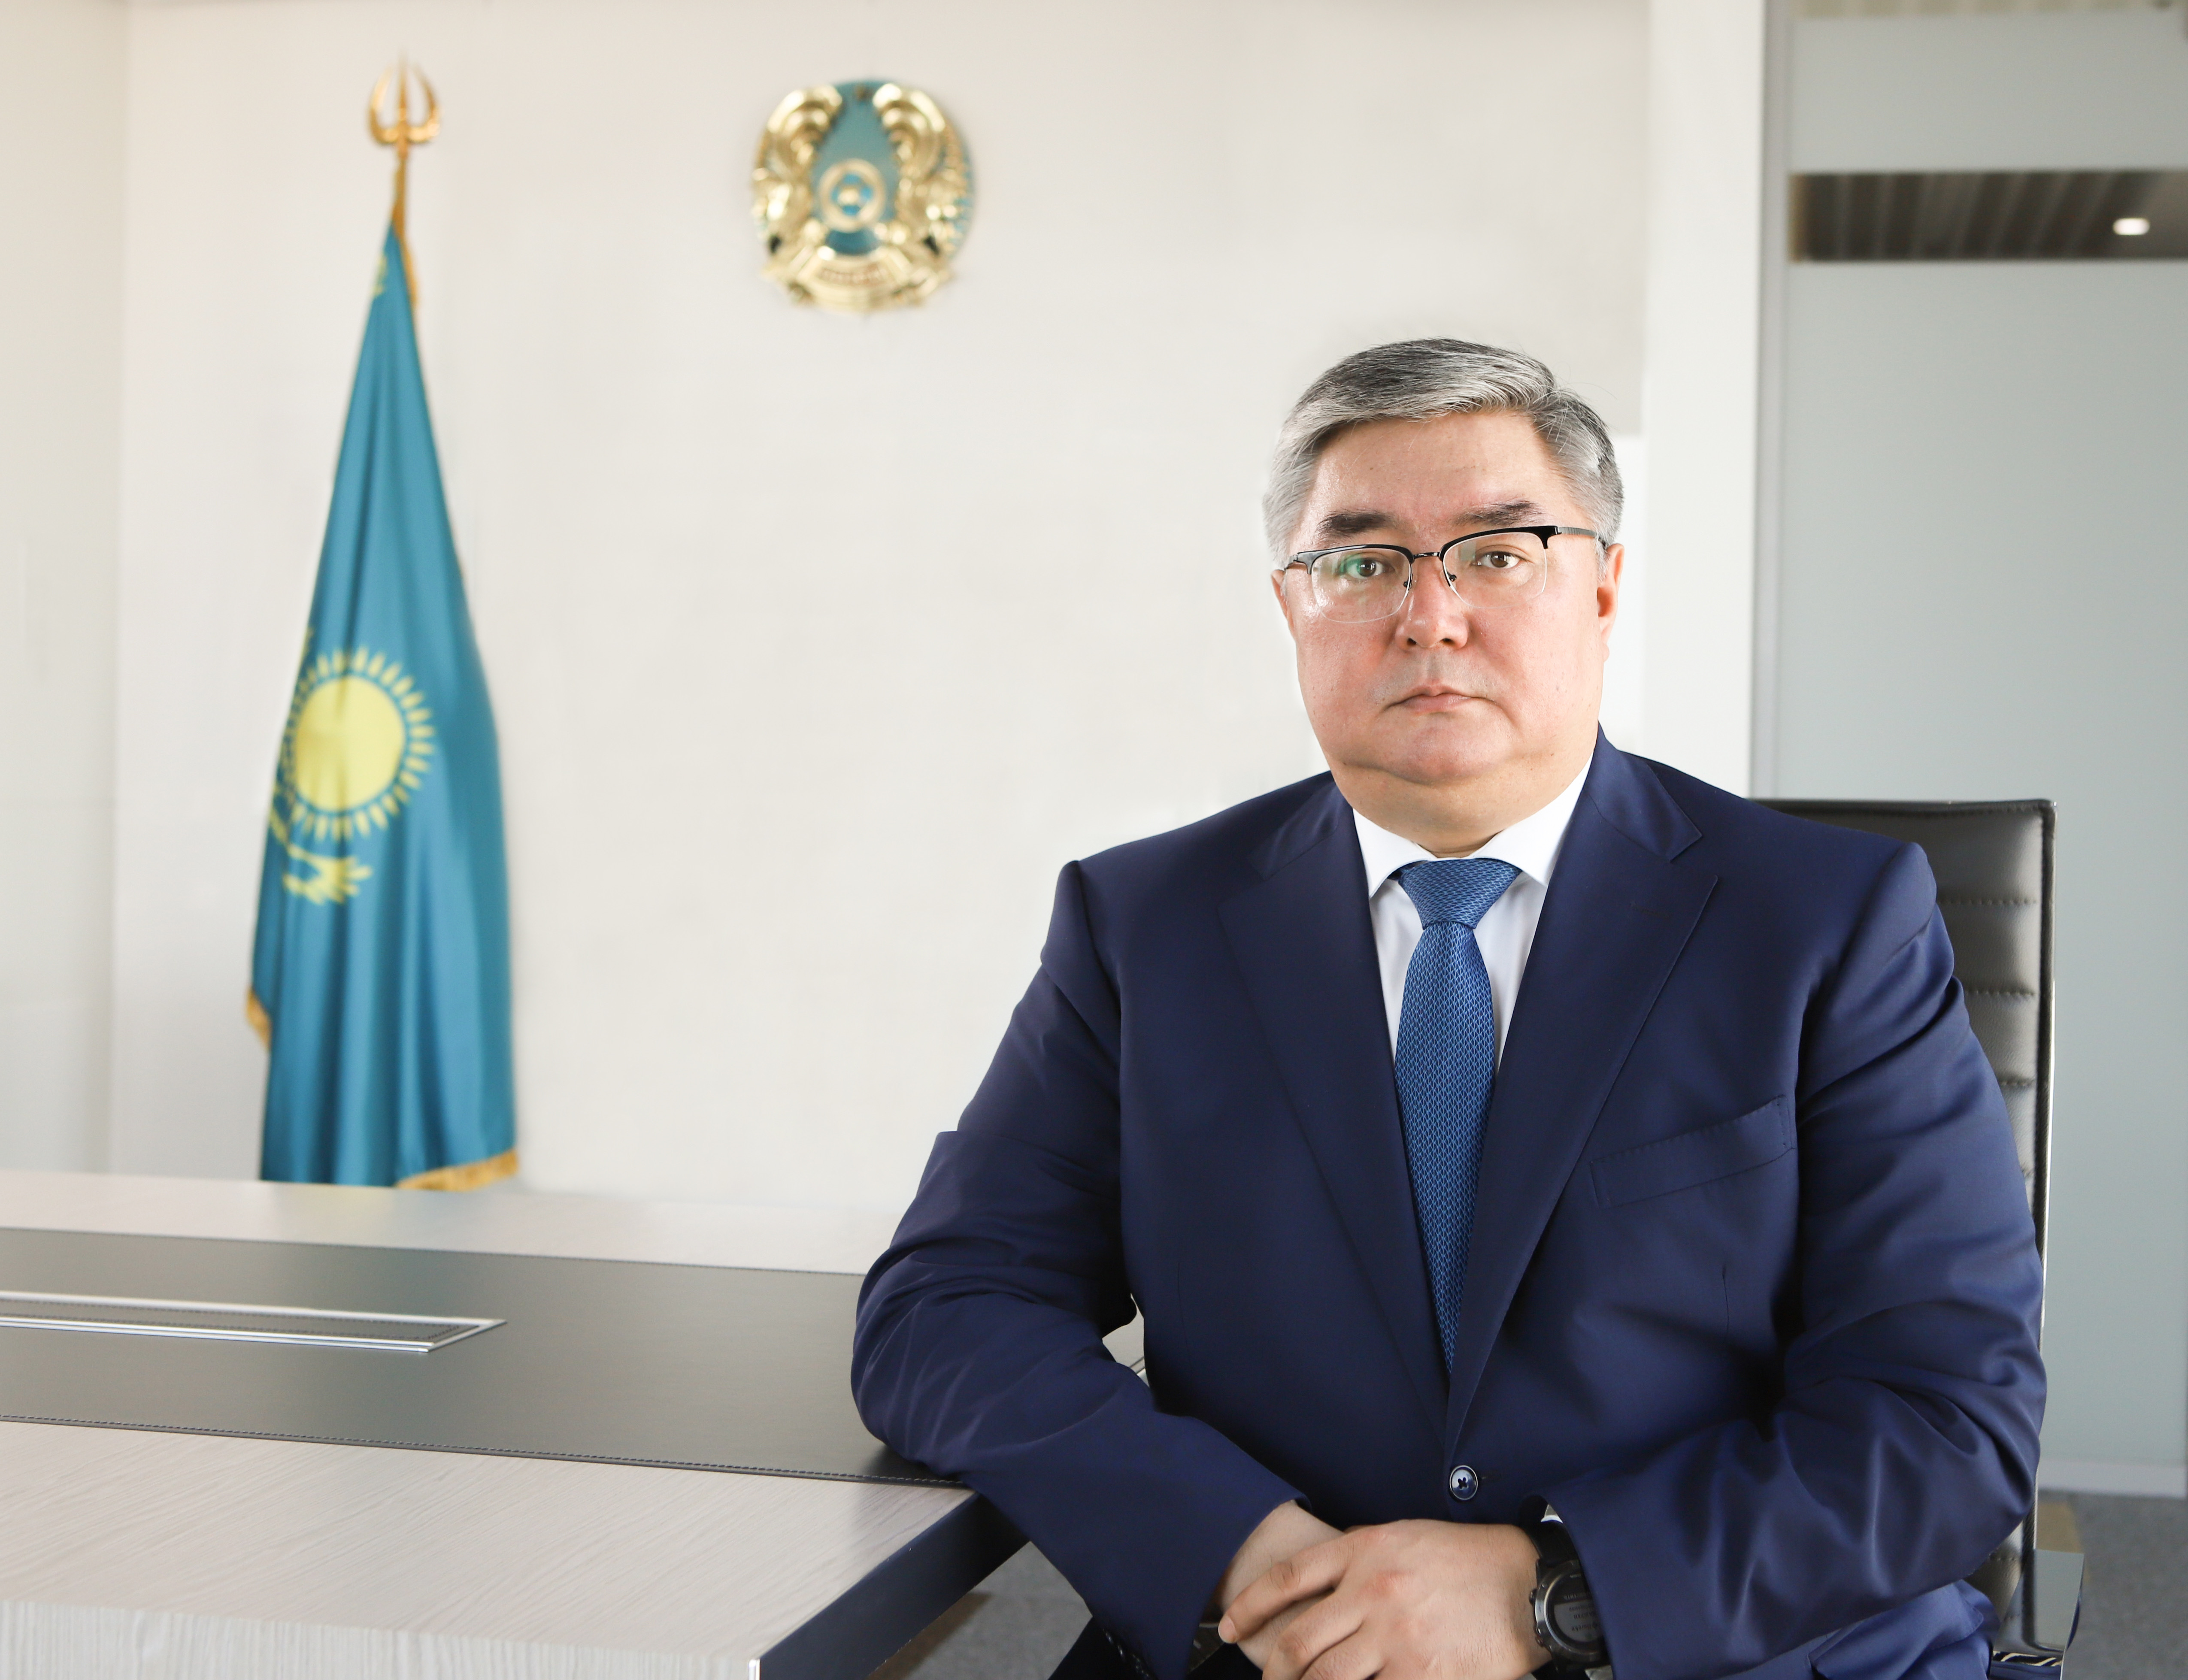 Первый заместитель председателя правления АО "НУХ "Байтерек" Нурболат Айдапкелов дал интервью по итогам финансирования АПК за первое полугодие 2023 года